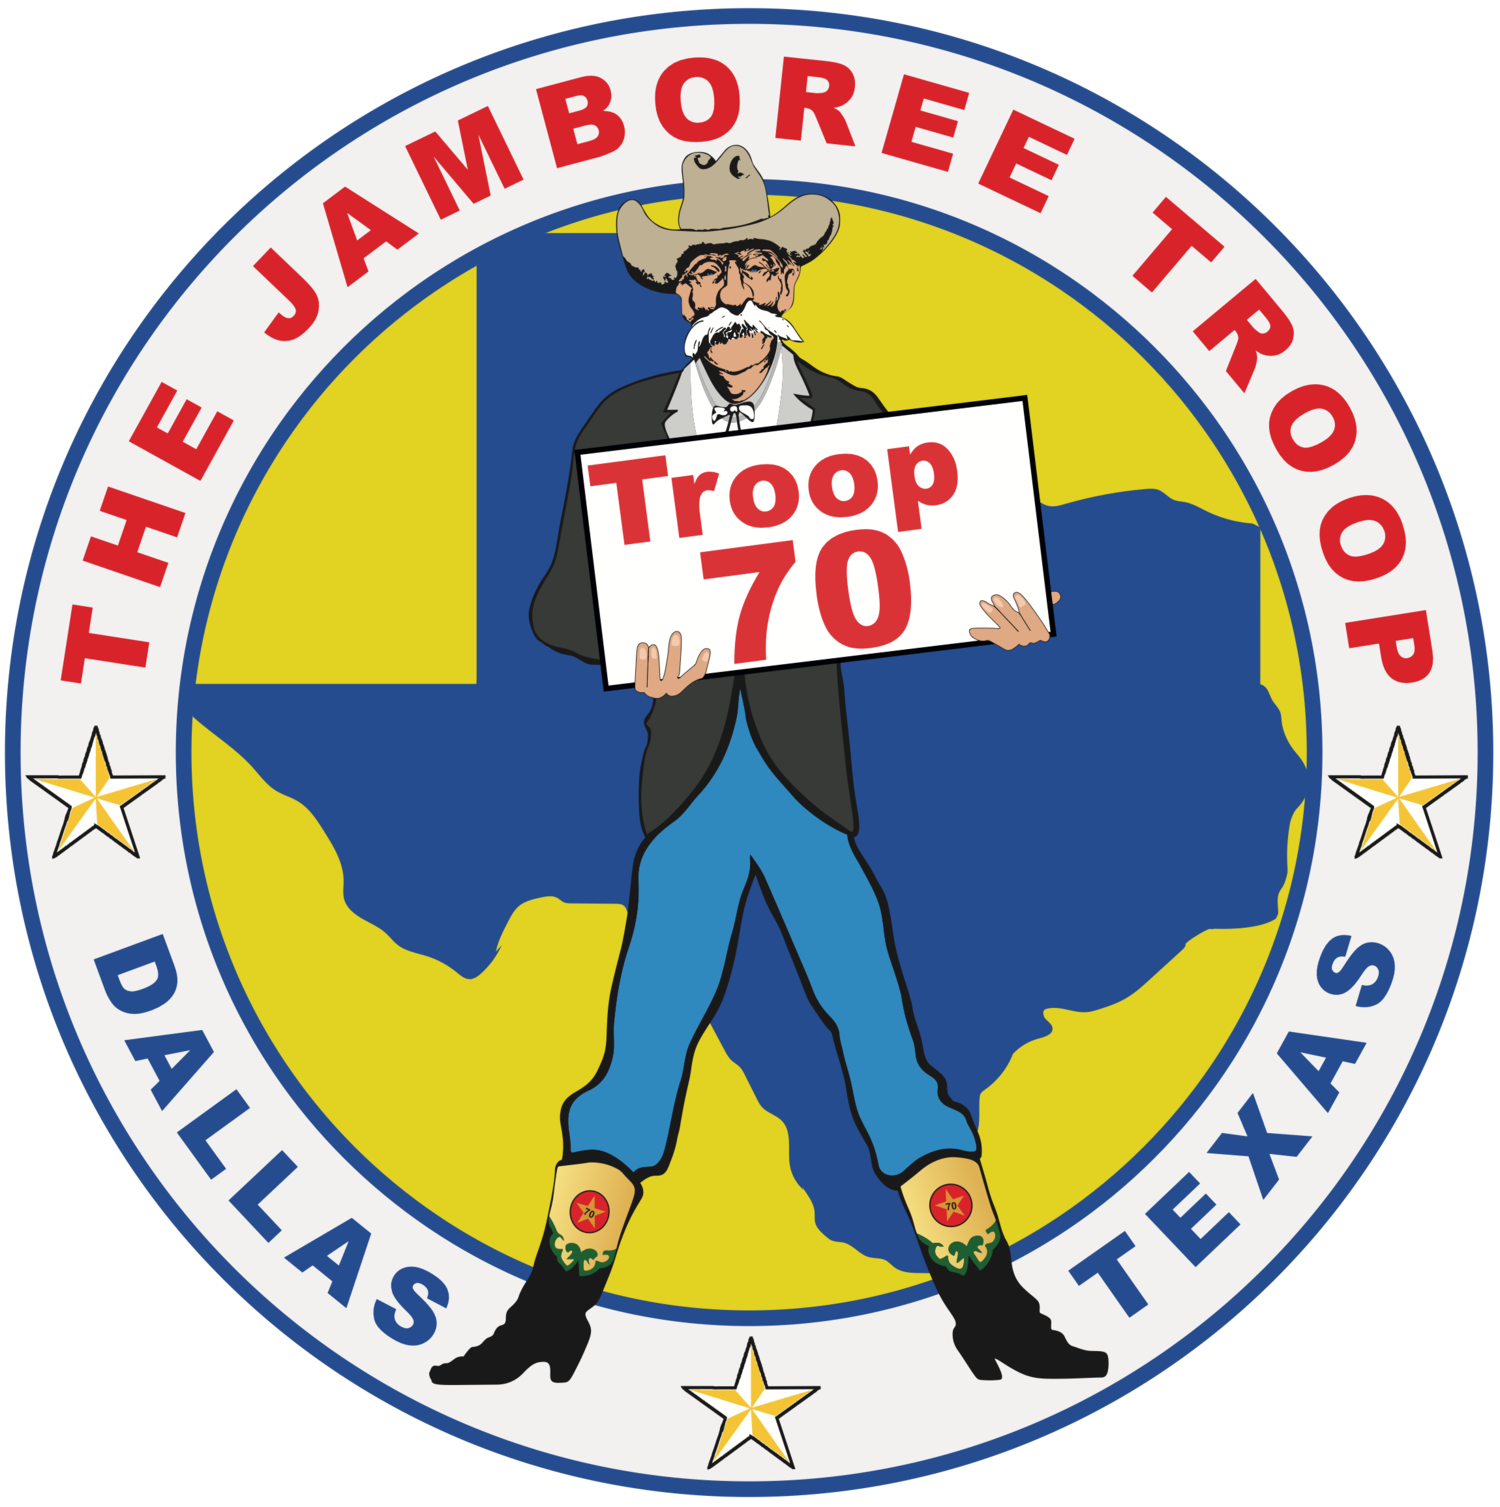 Troop 70 - The Jamboree Troop